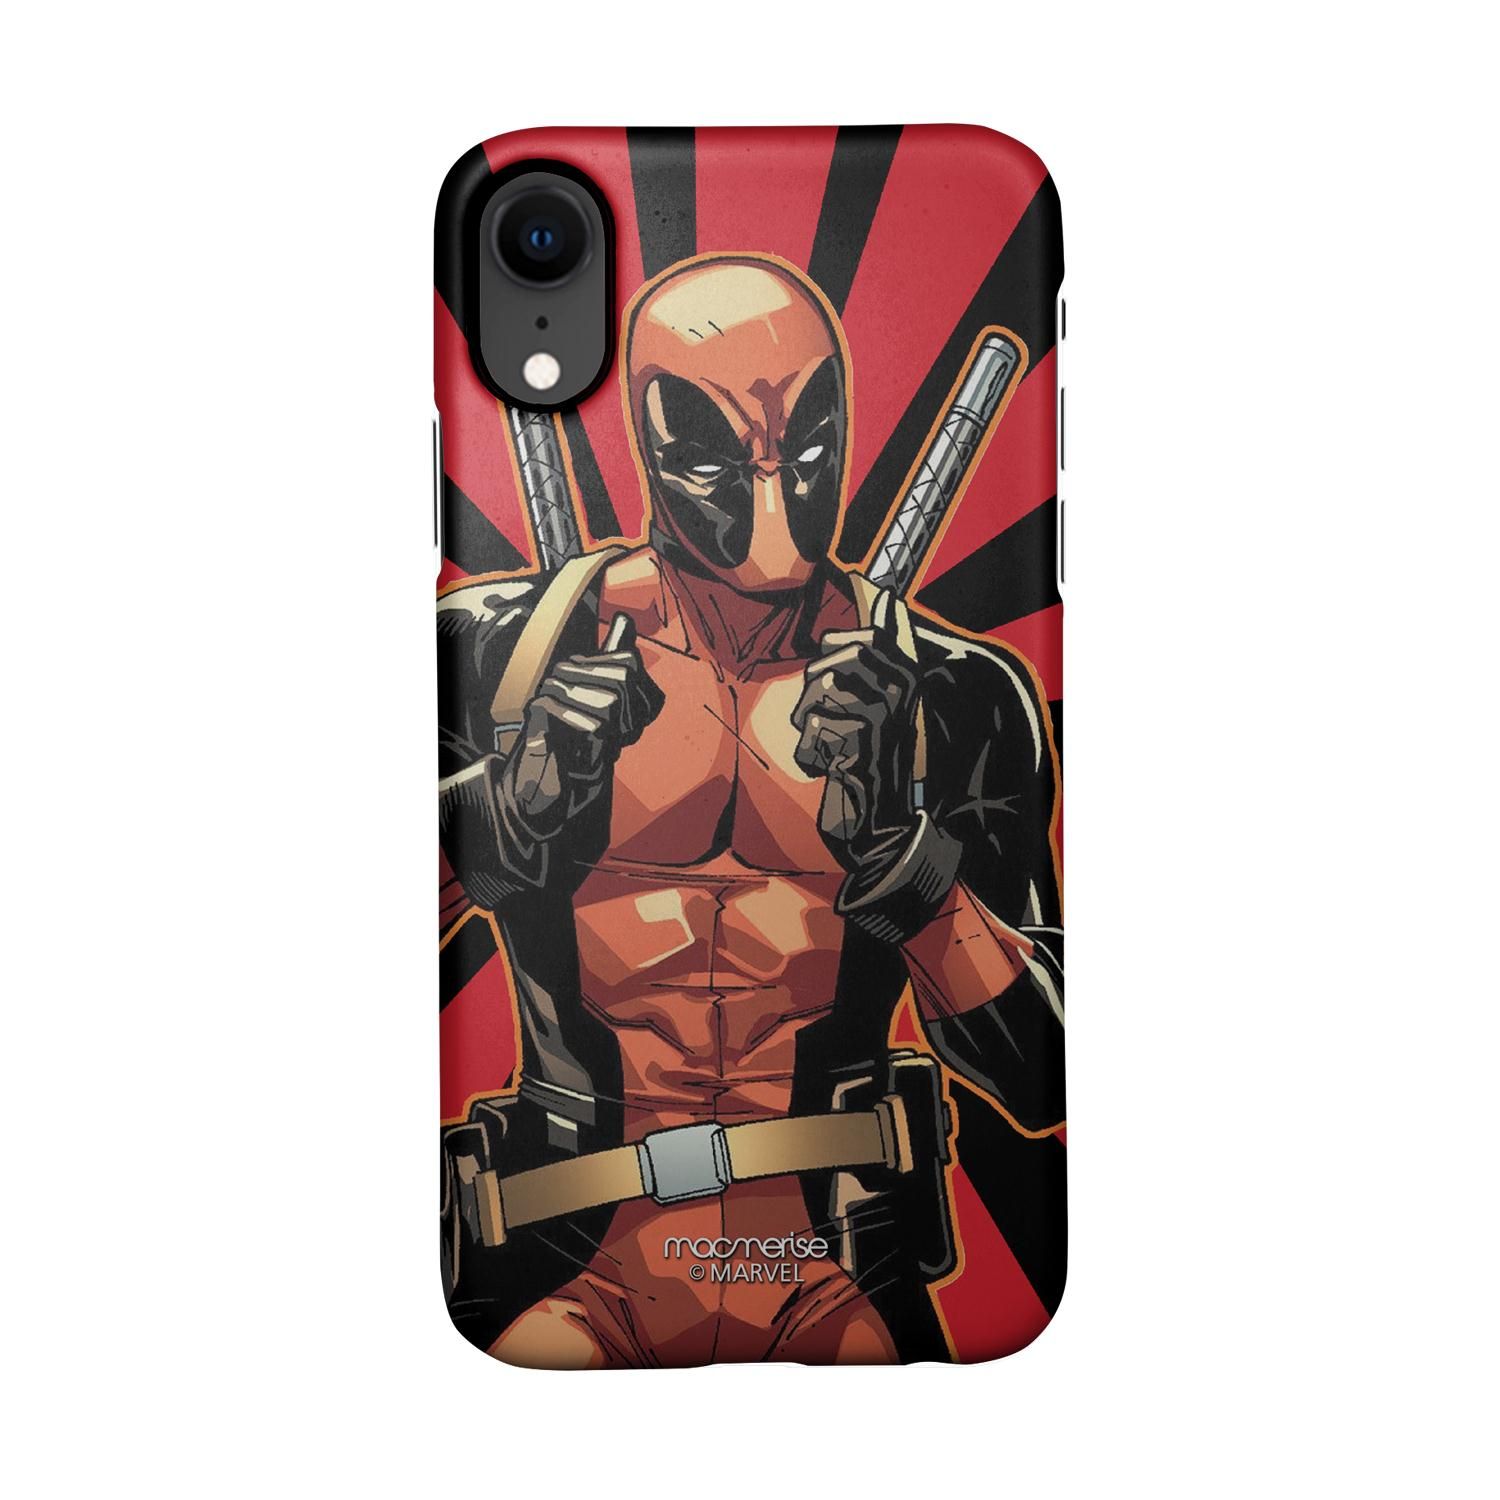 Buy Smart Ass Deadpool - Sleek Phone Case for iPhone XR Online